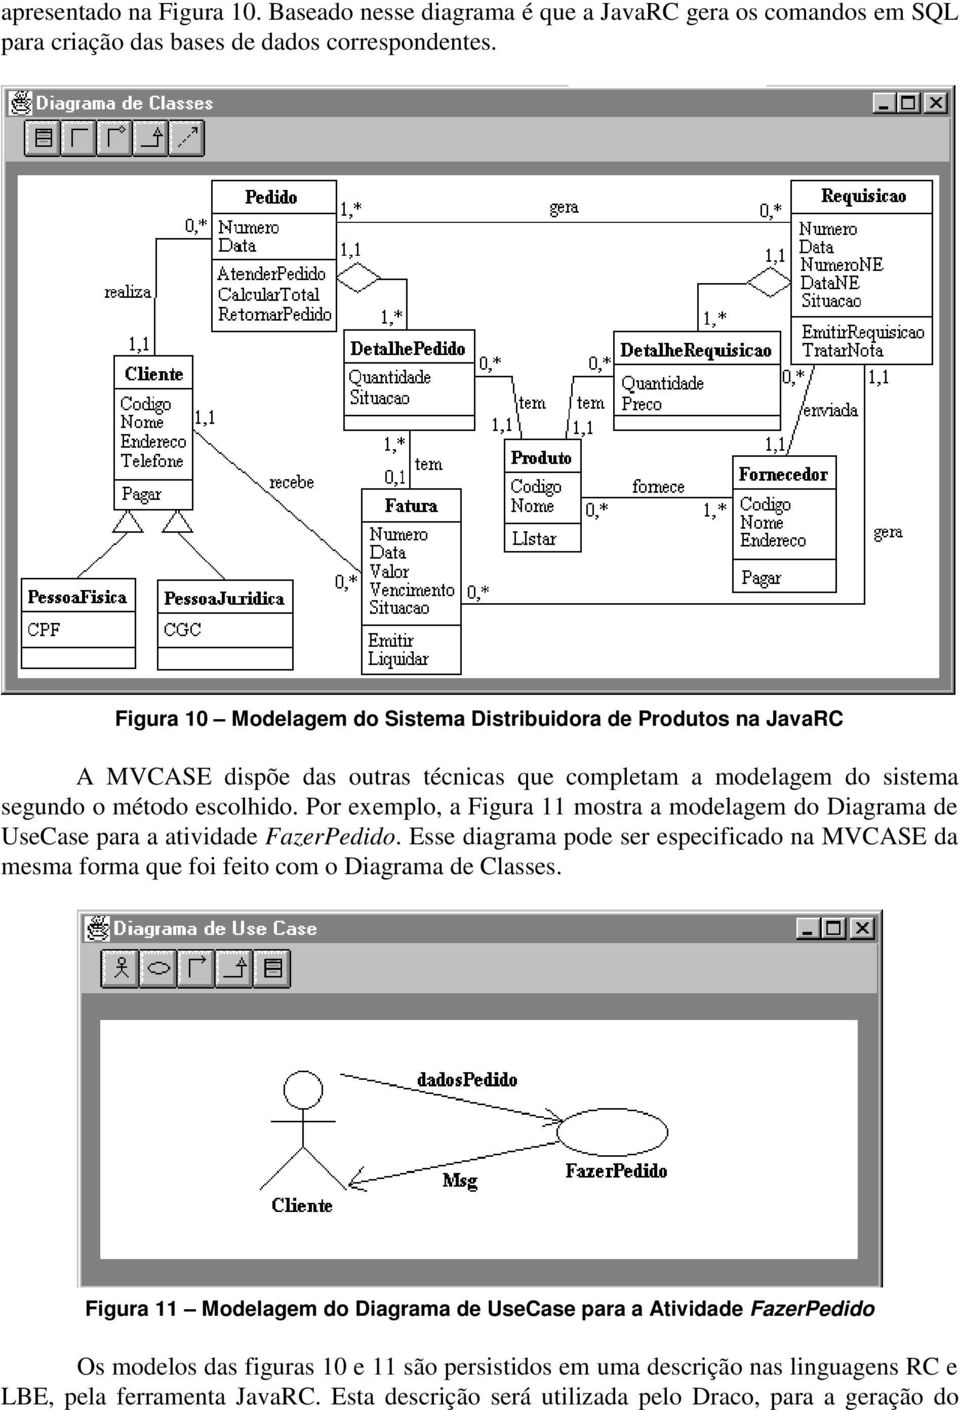 Por exemplo, a Figura 11 mostra a modelagem do Diagrama de UseCase para a atividade FazerPedido.